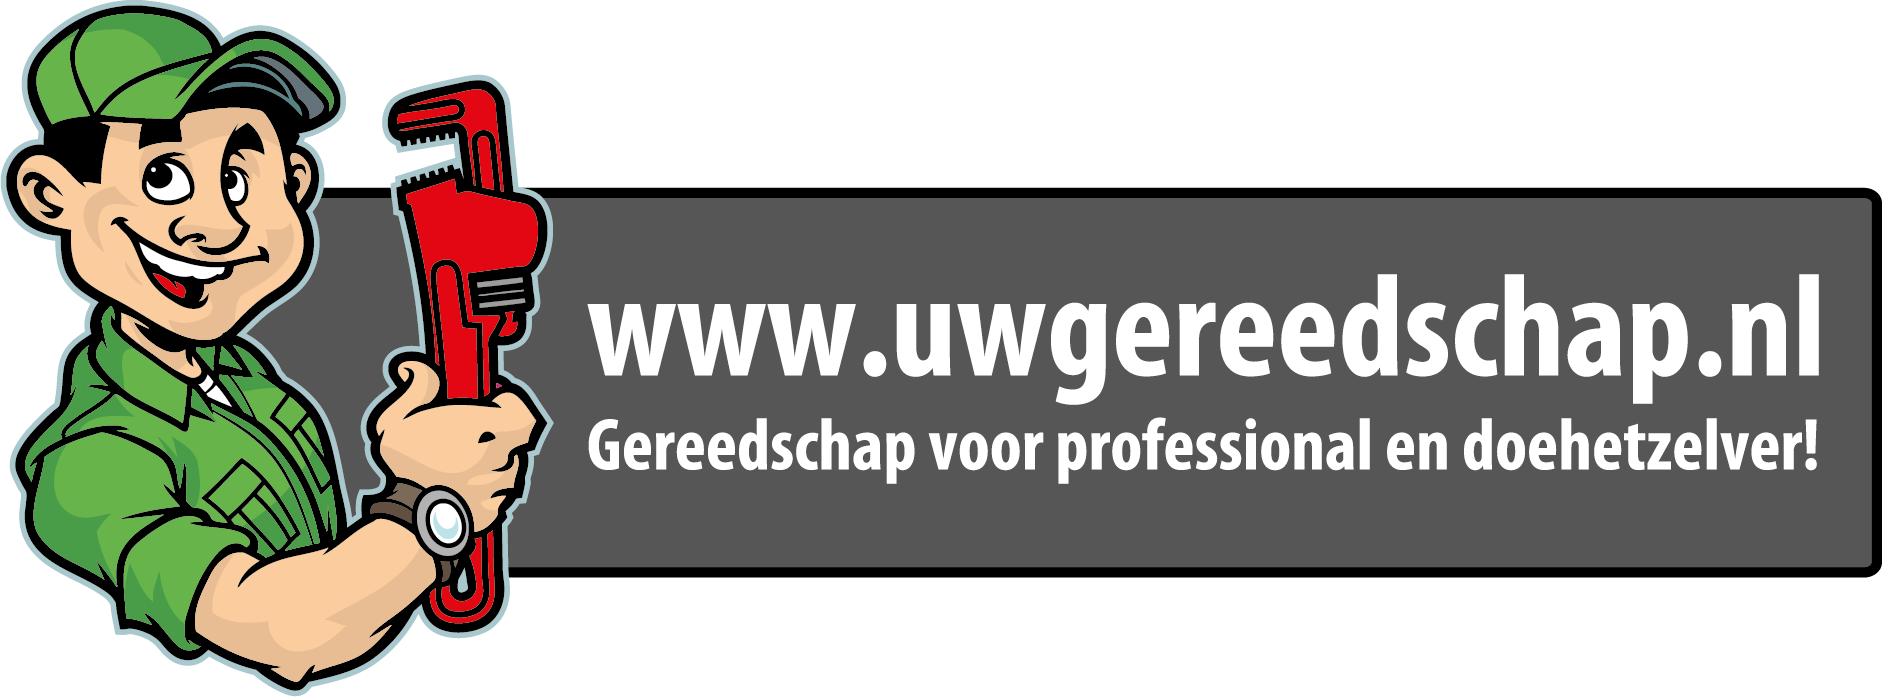 Bezoek Uwgereedschap.nl